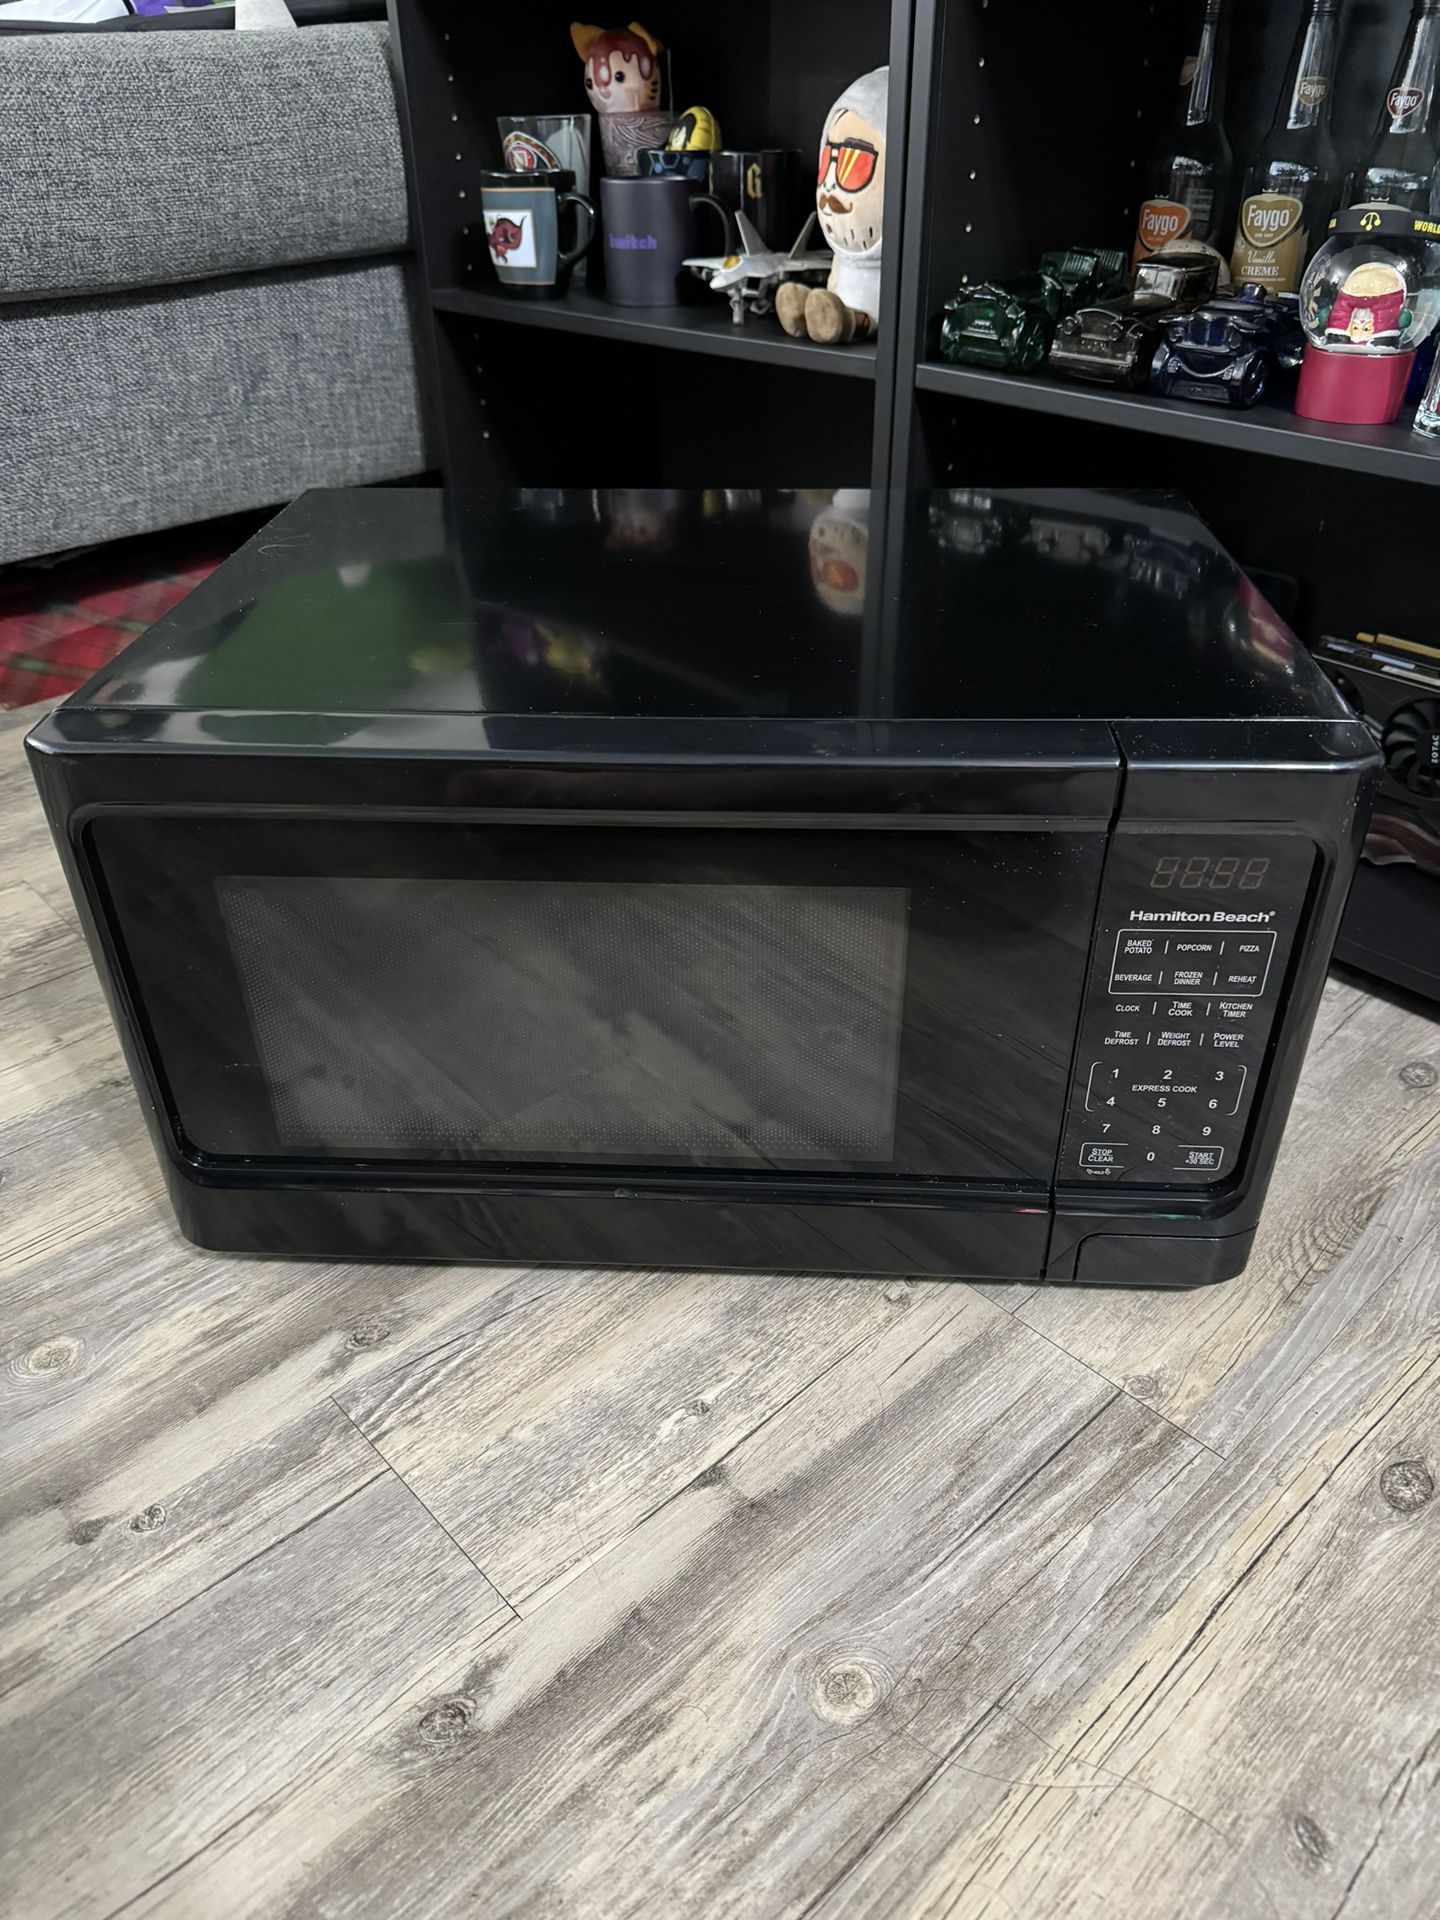 1.1 CU FT Microwave 1000W